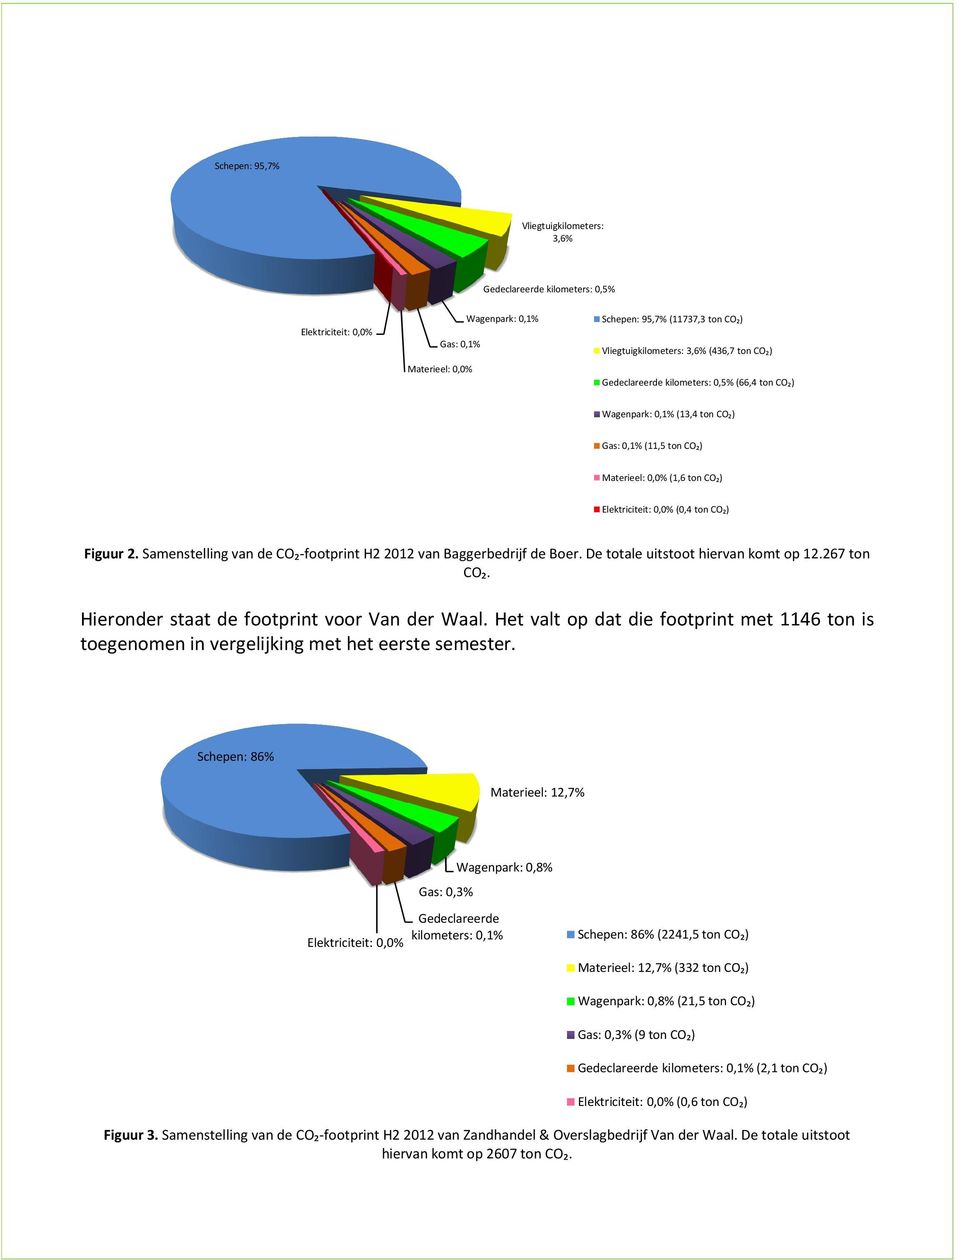 Samenstelling van de CO₂-footprint H2 2012 van Baggerbedrijf de Boer. De totale uitstoot hiervan komt op 12.267 ton CO₂. Hieronder staat de footprint voor Van der Waal.